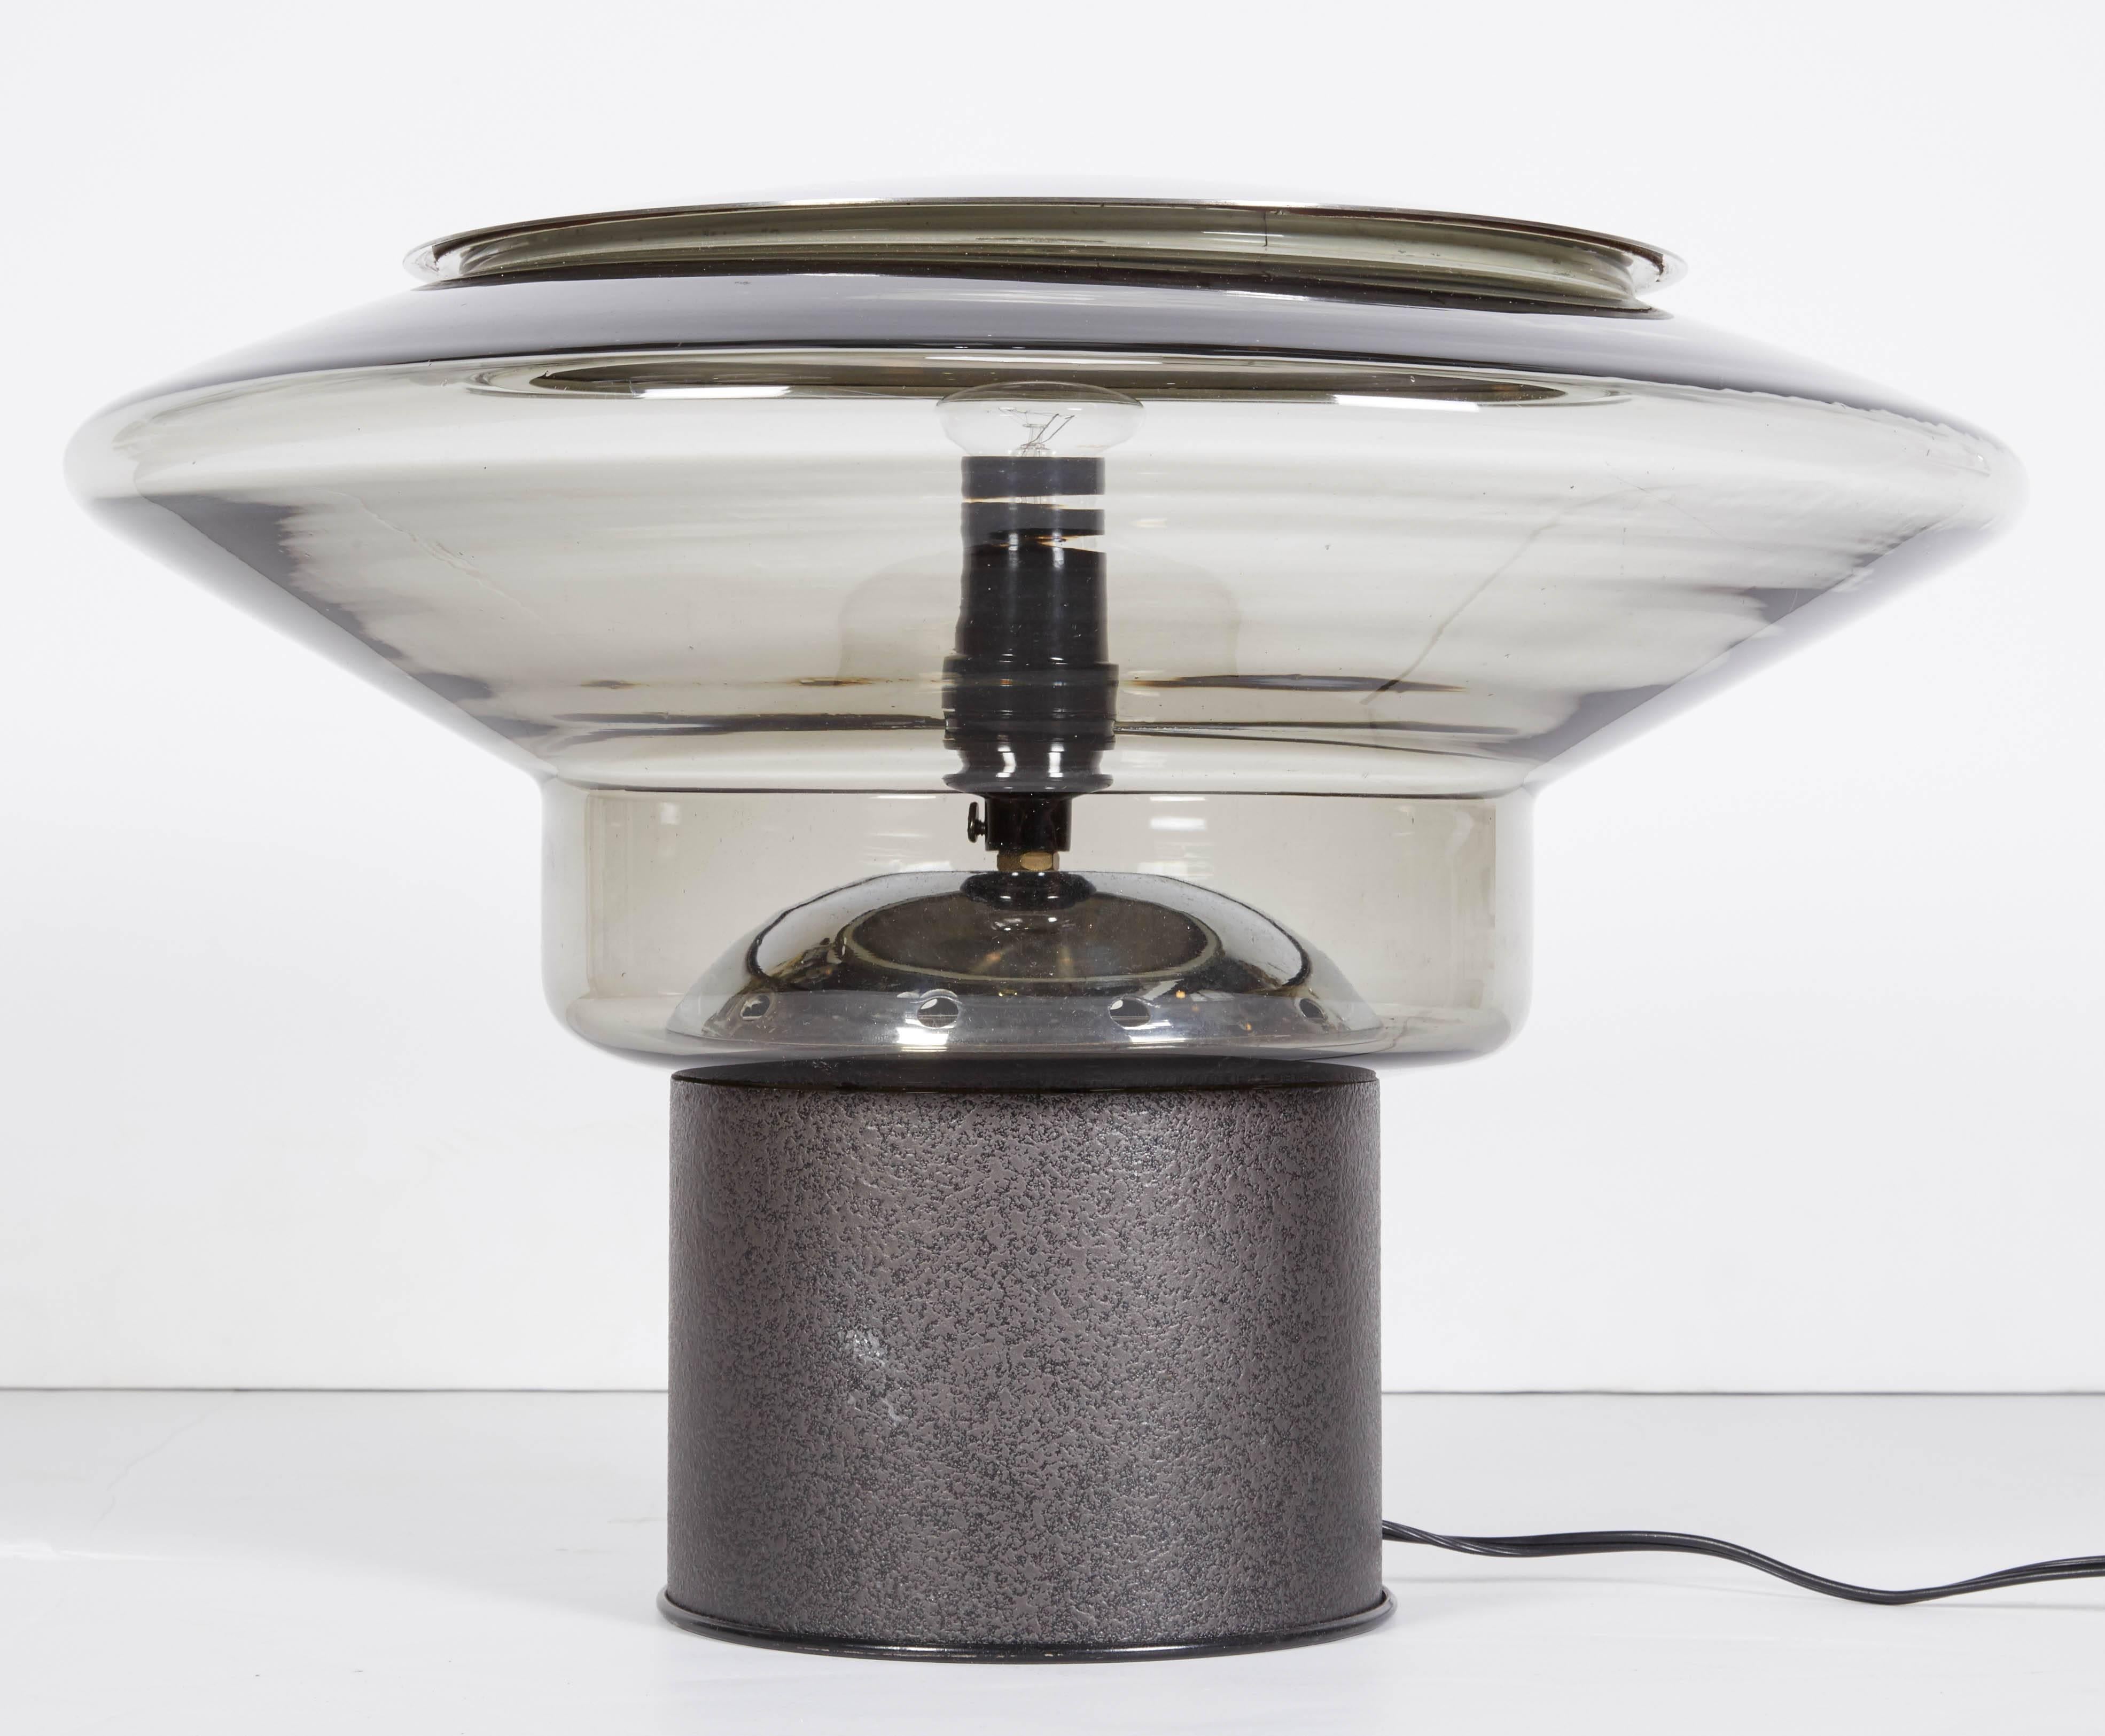 Une pièce emblématique du design moderne italien, vers 1970. Cette lampe à poser est une sculpture en verre, métal et lumière sous forme de lampe à poser. Le grand abat-jour est en verre de Murano soufflé à la main en gris pâle. Il repose solidement